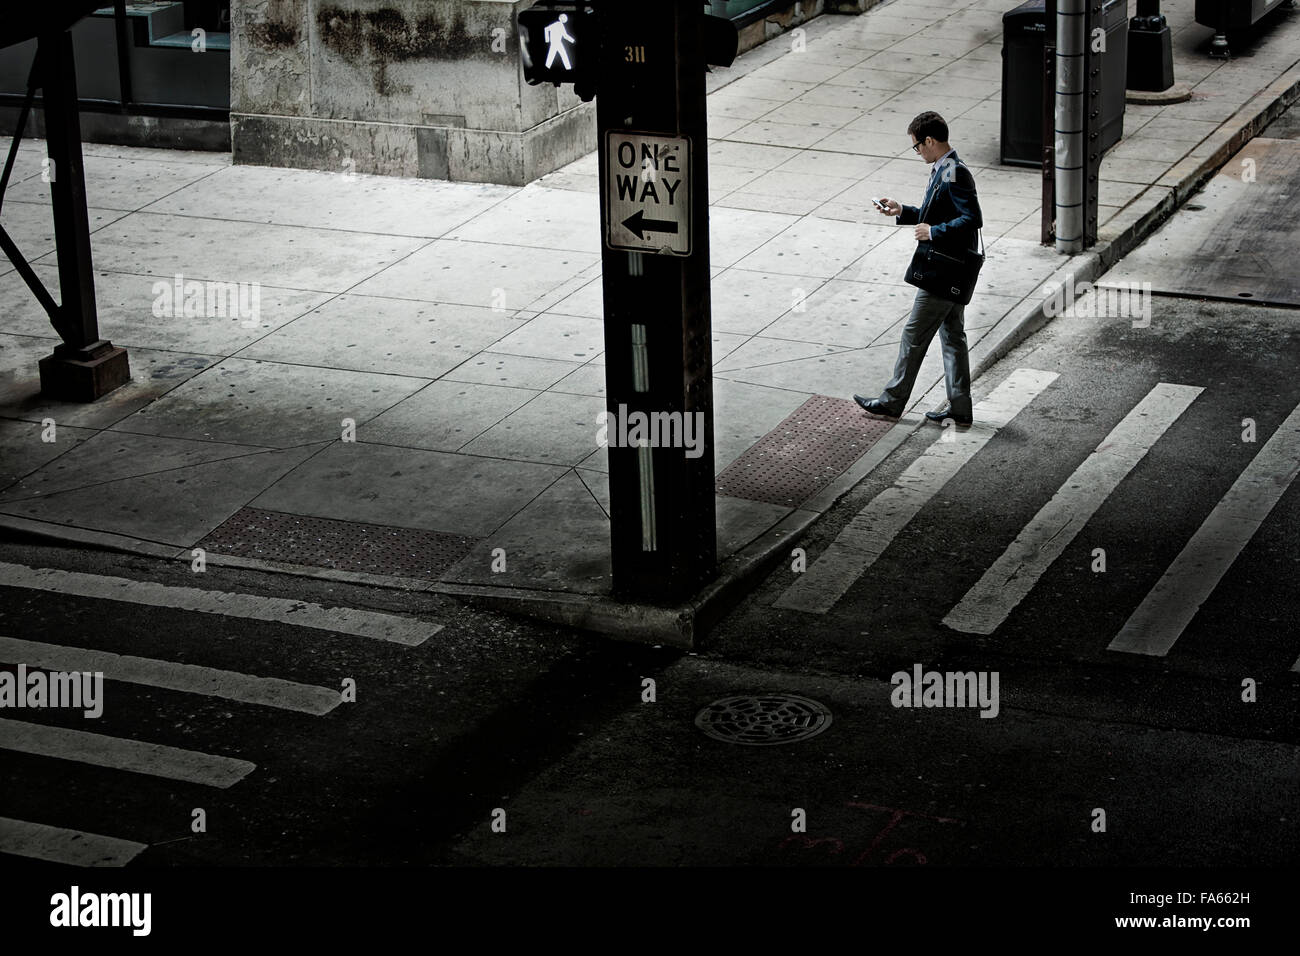 Un homme marchant sur un passage à niveau de la rue, à la recherche d'un téléphone dans sa main. Banque D'Images